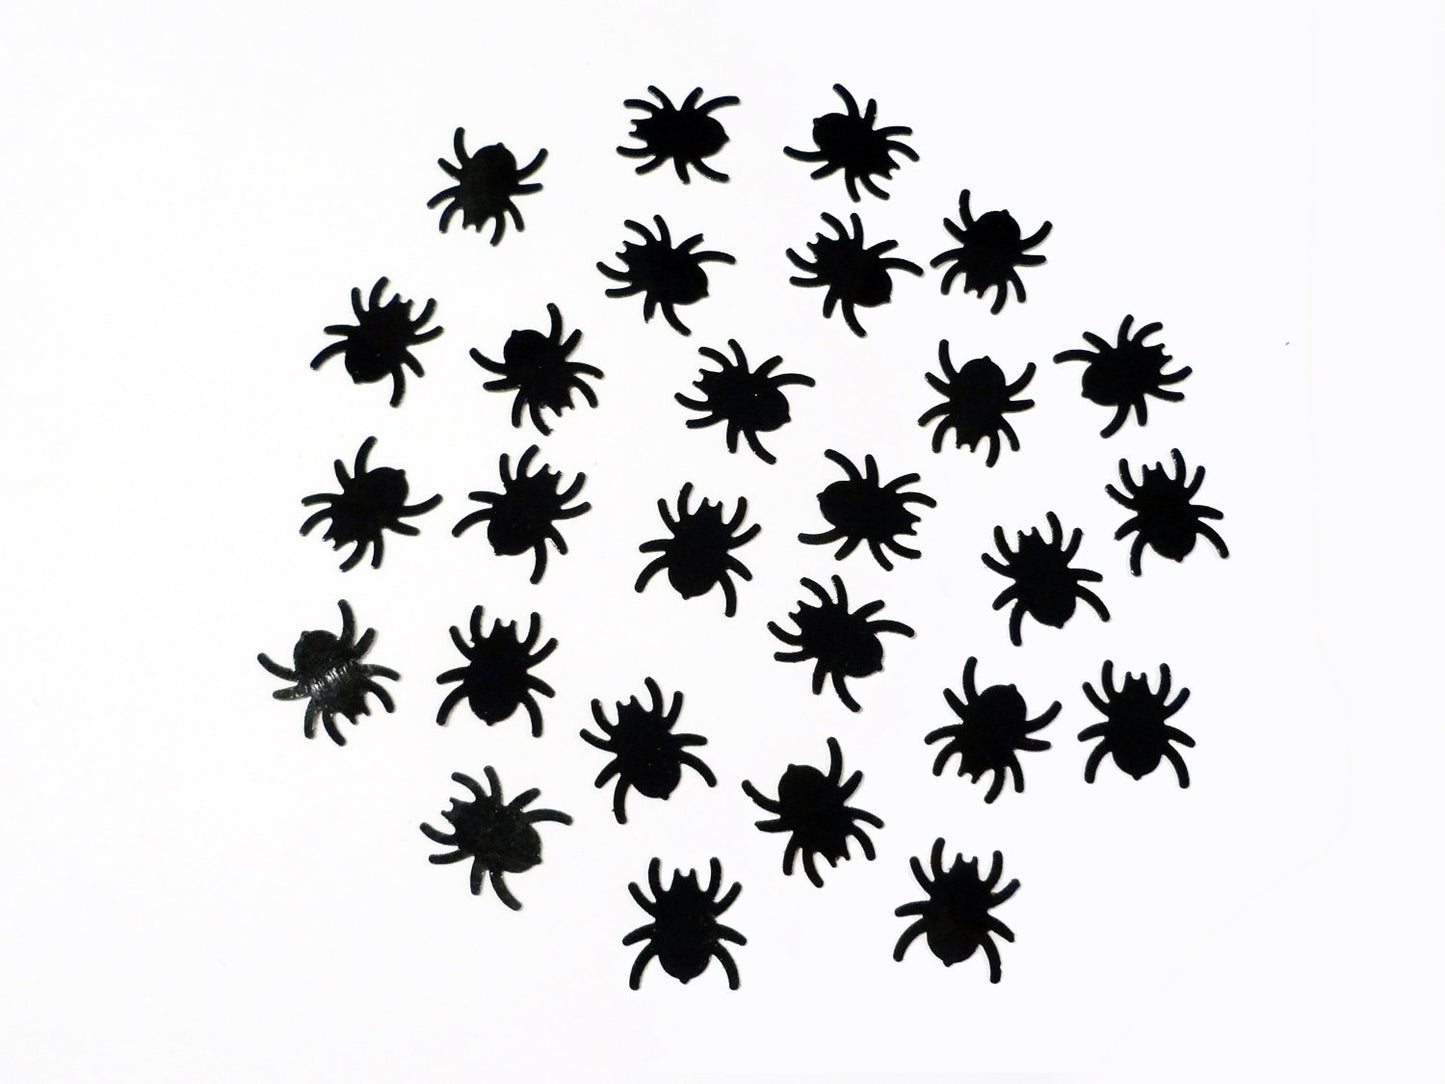 Black Spider Sequins, 15mm